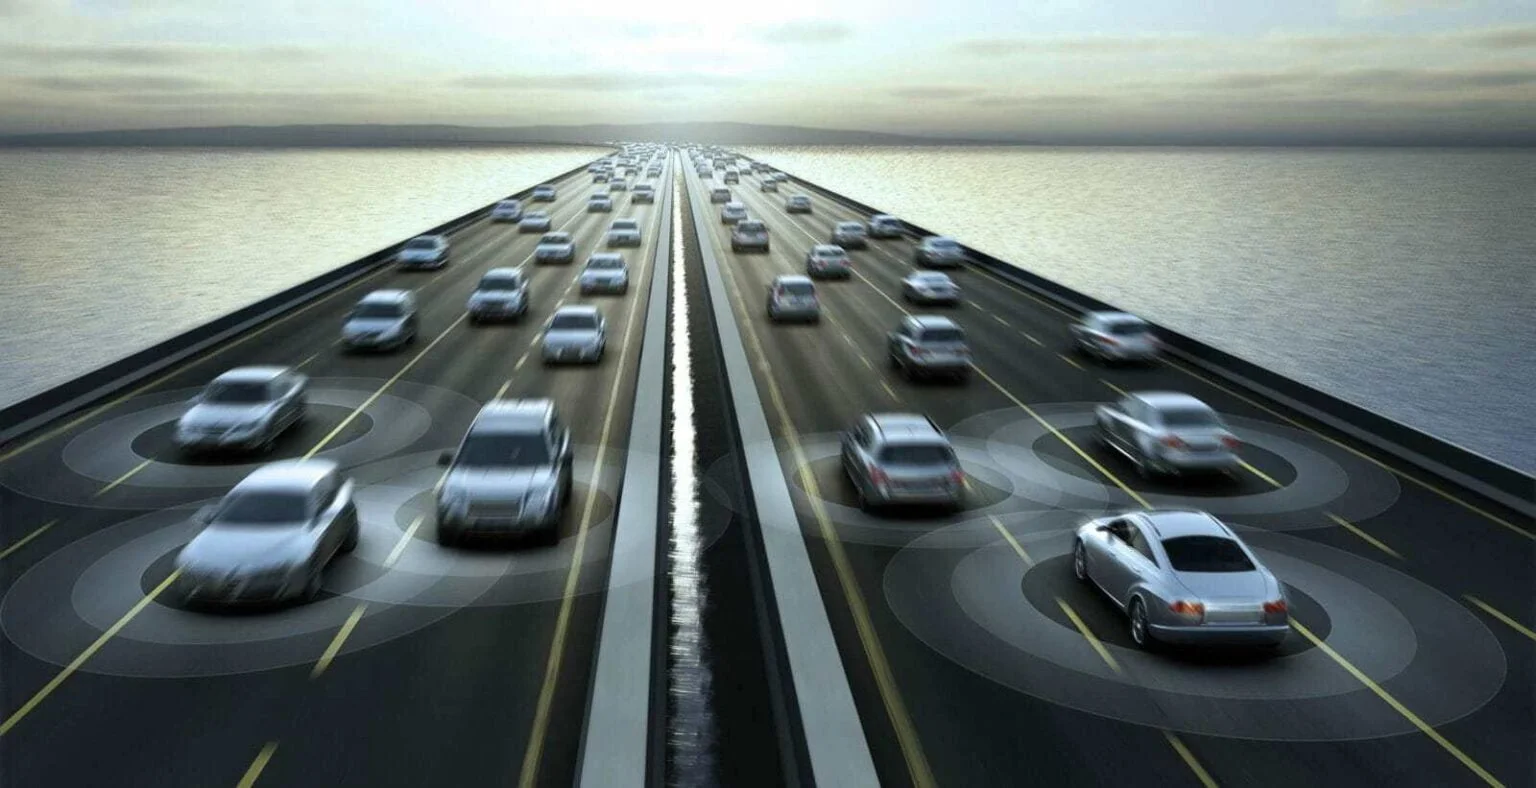 Jaka będzie przyszłość inteligentnych samochodów?